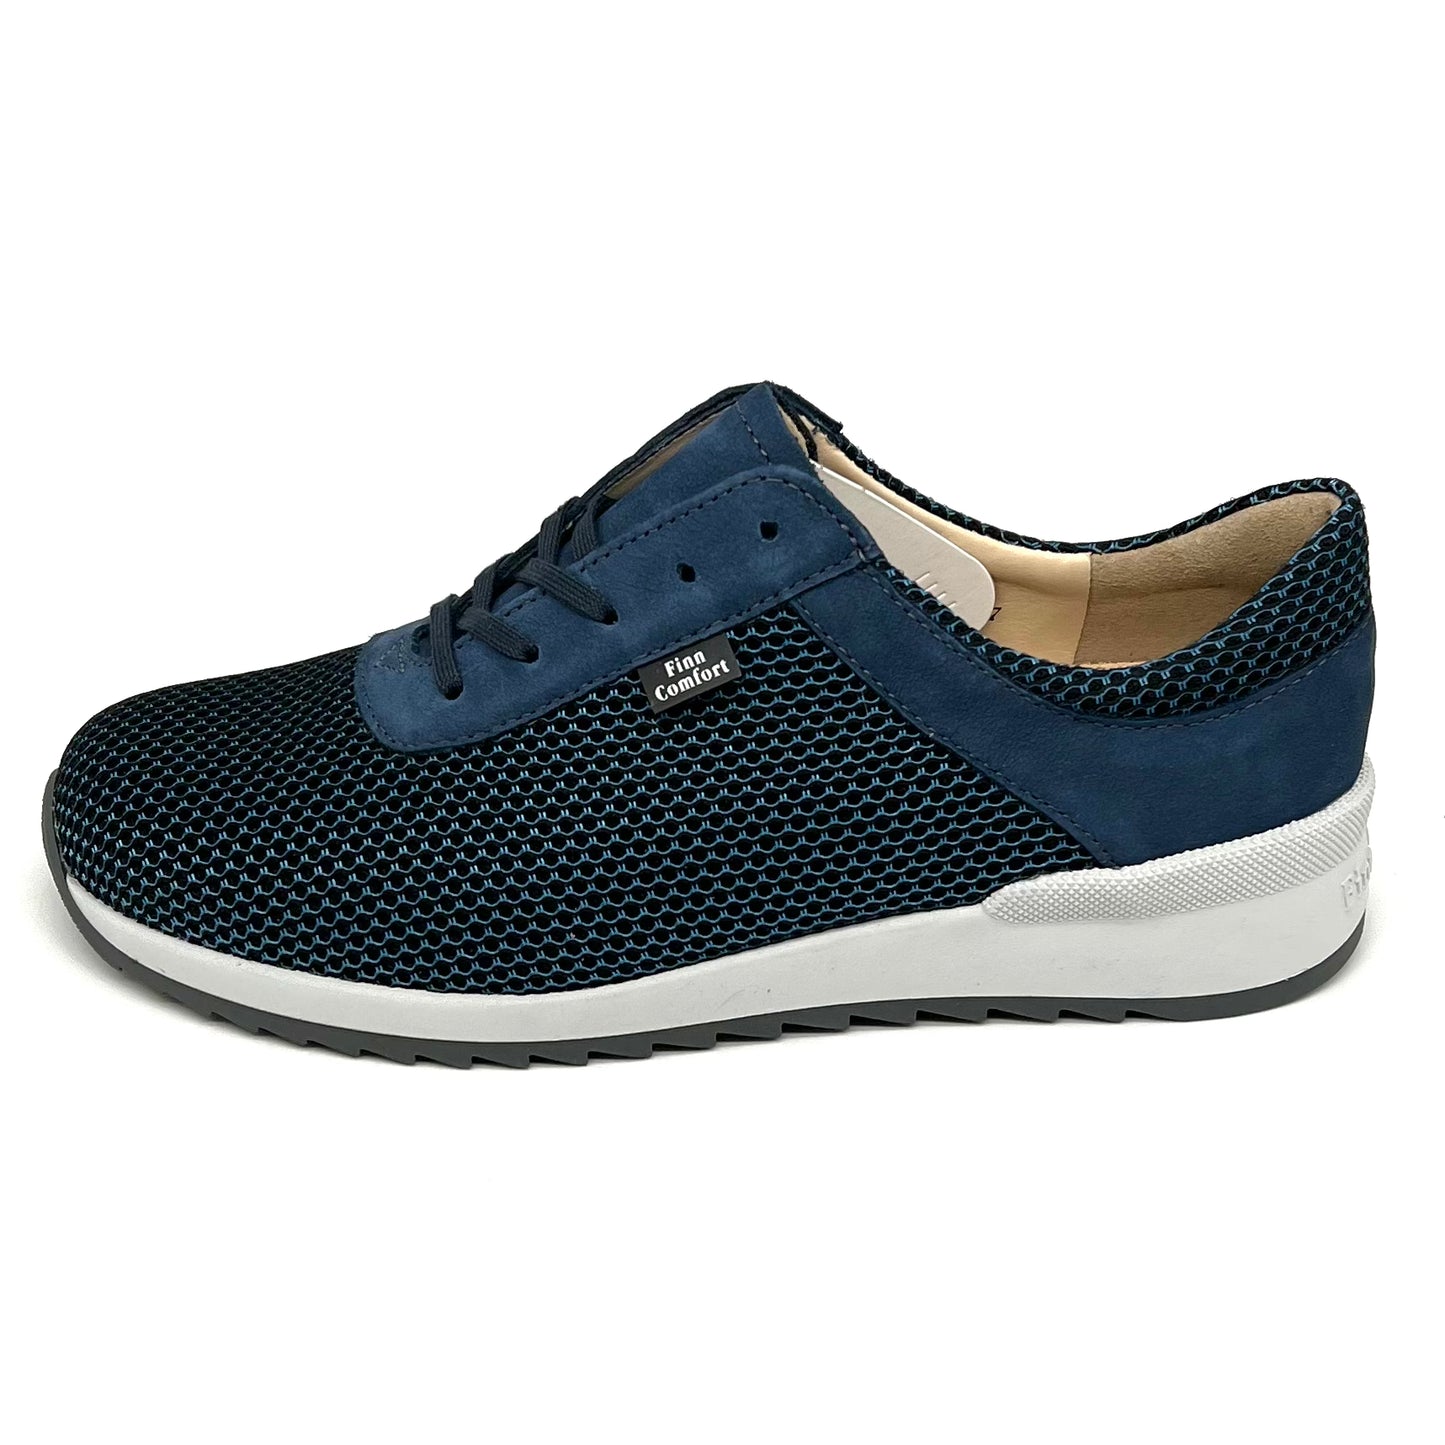 Damen Komfort Schnürer Sneakers Blau von Finn Comfort 17498